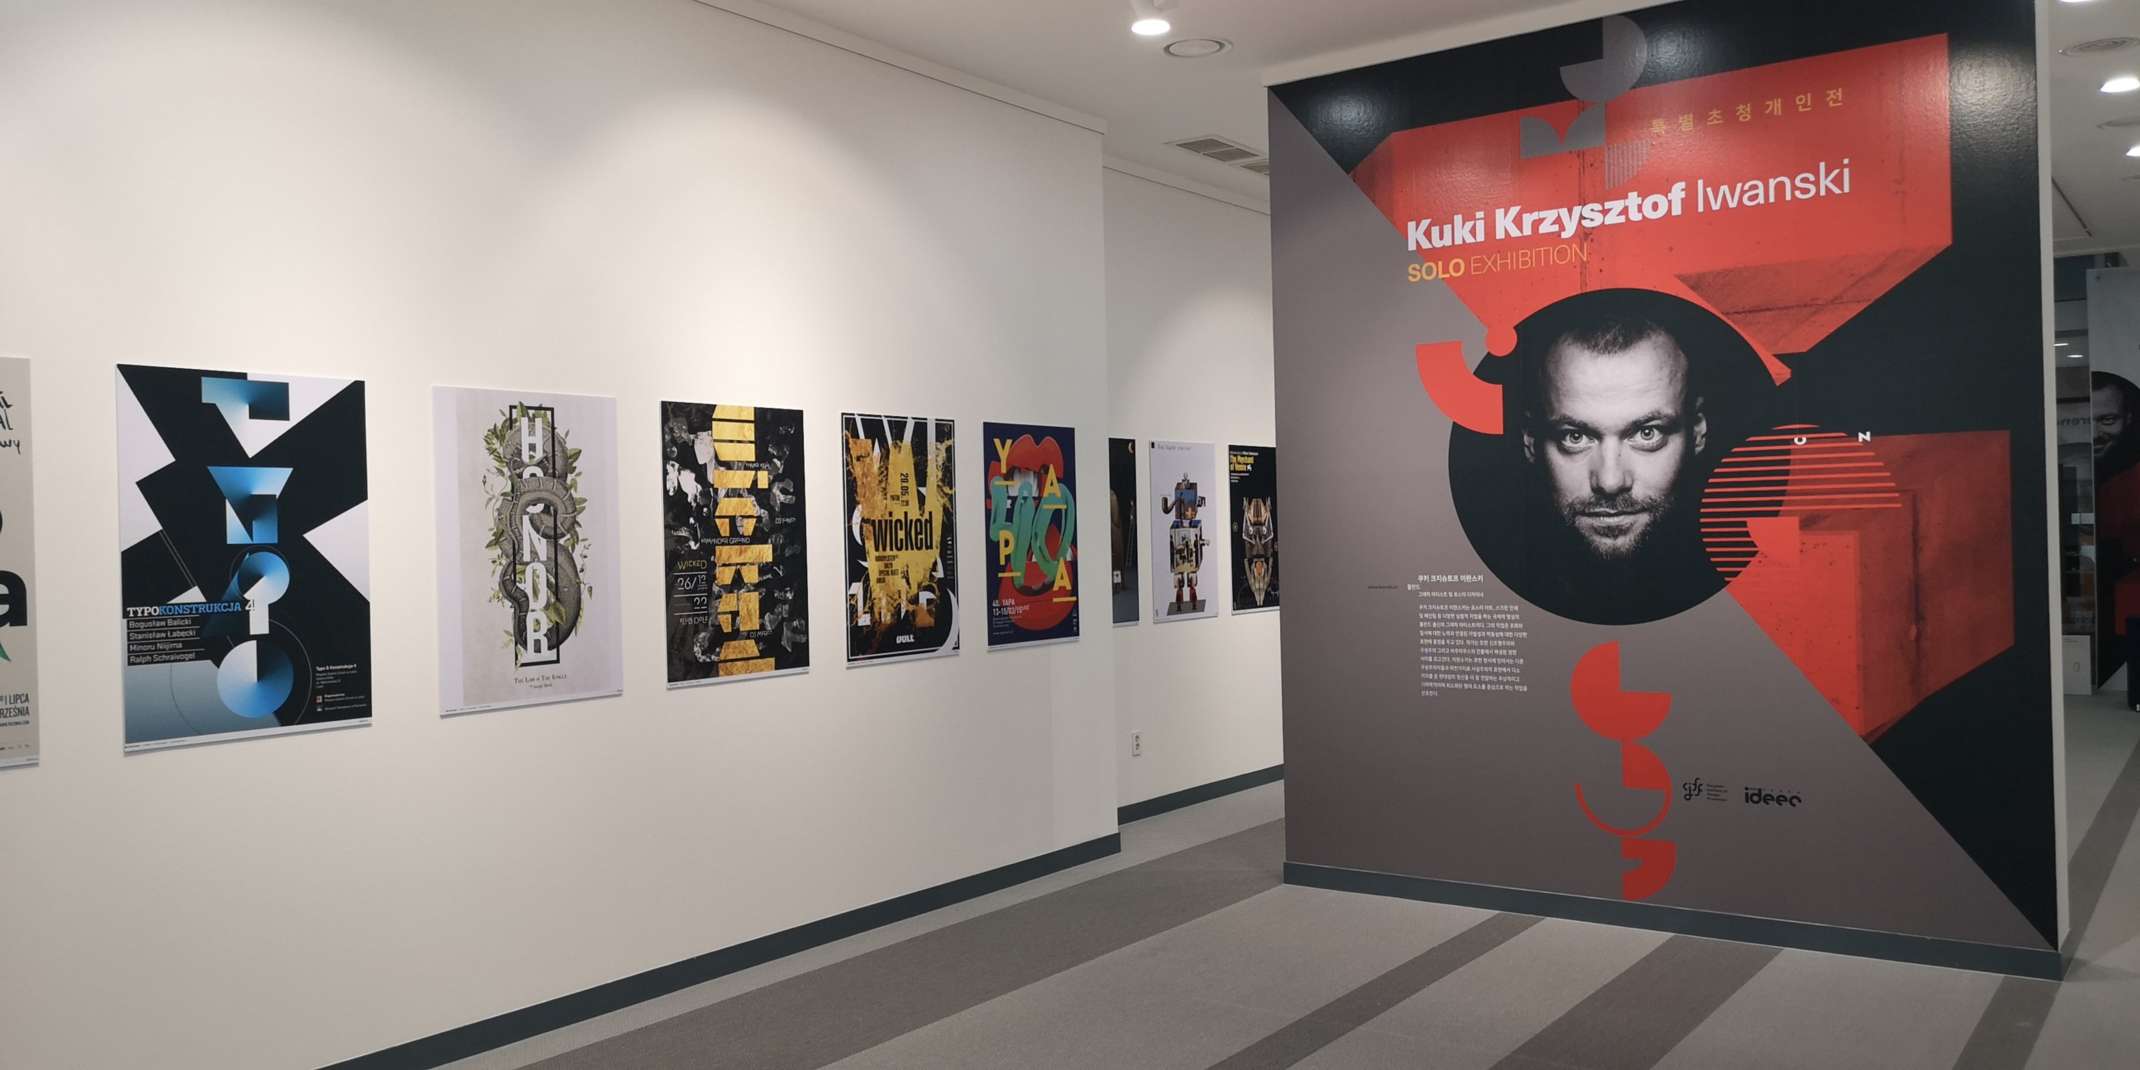 Ausstellung von Kuki Krzysztof Iwanski